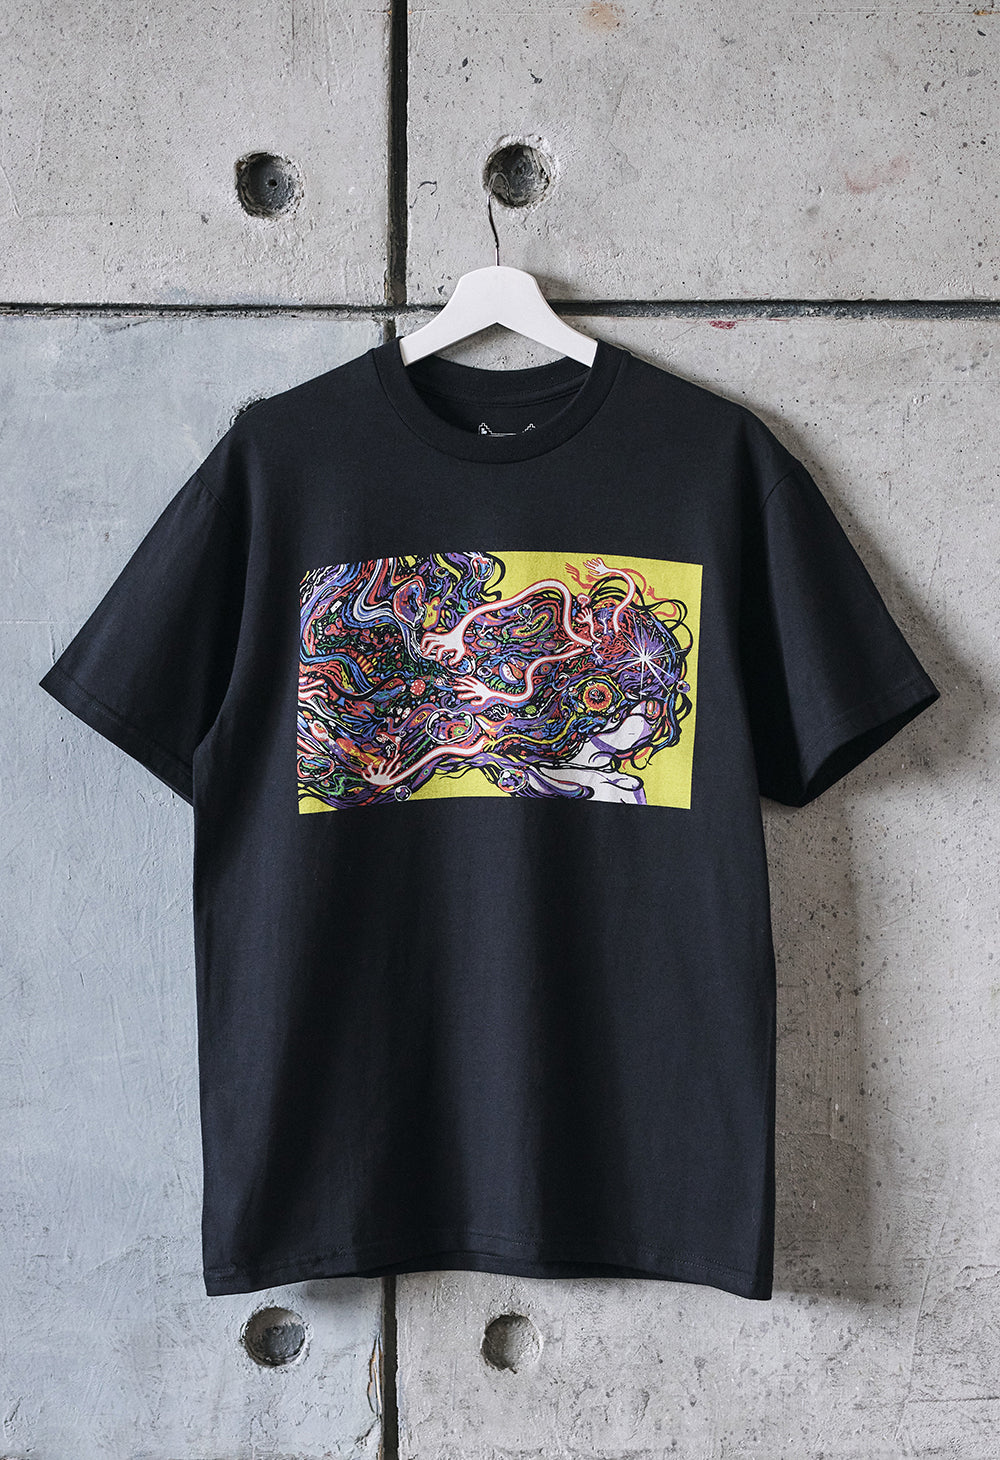 APEX PREDATOR T-Shirt – OMOCAT